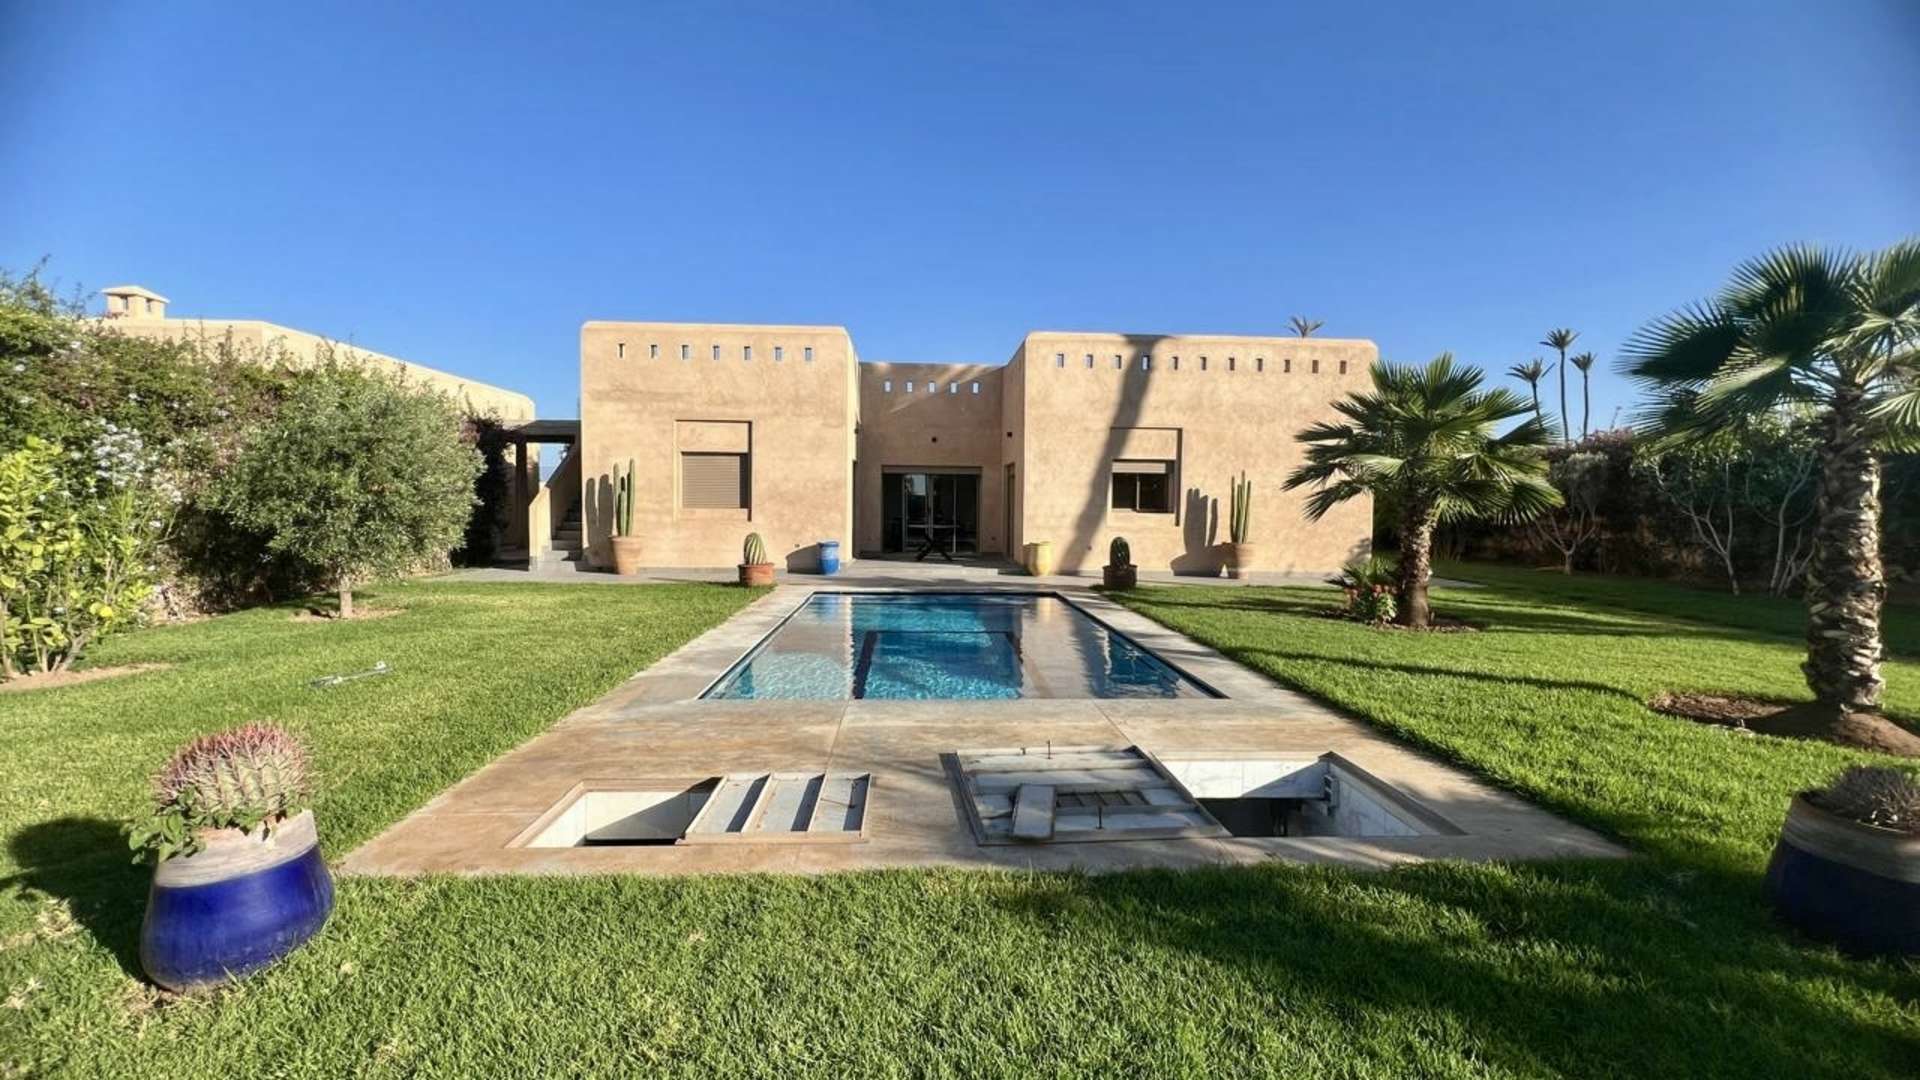 Vente,Villa,Magnifique opportunité de vente 2 villas sur 2500M2 à Marrakech,Marrakech,Route de Fès